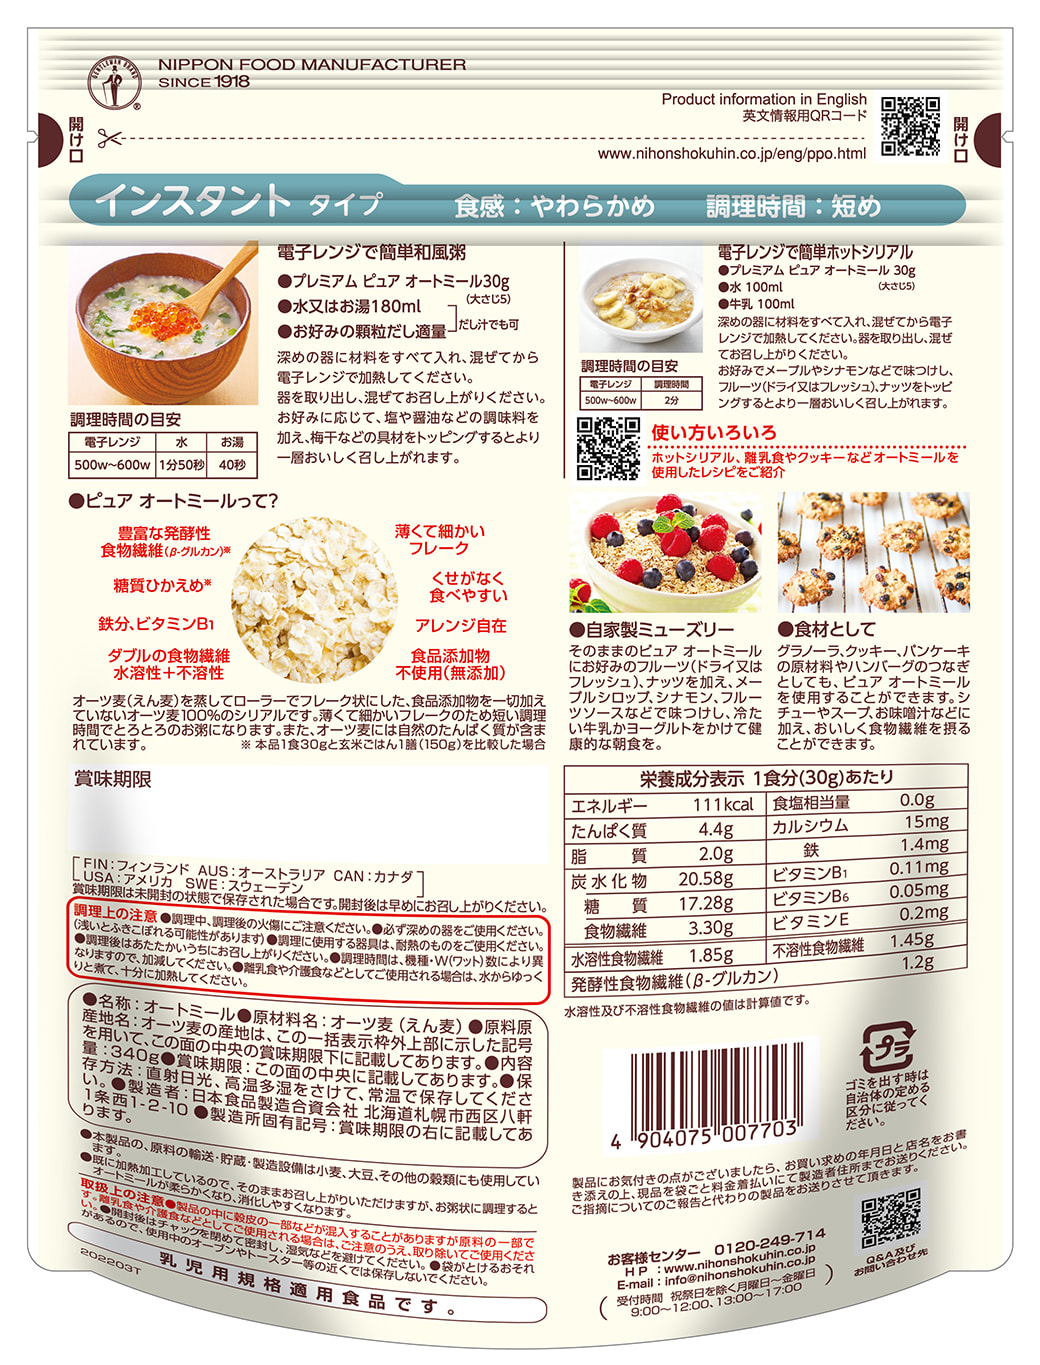 日食プレミアムピュアオートミール | 日本食品製造合資会社の製品・商品